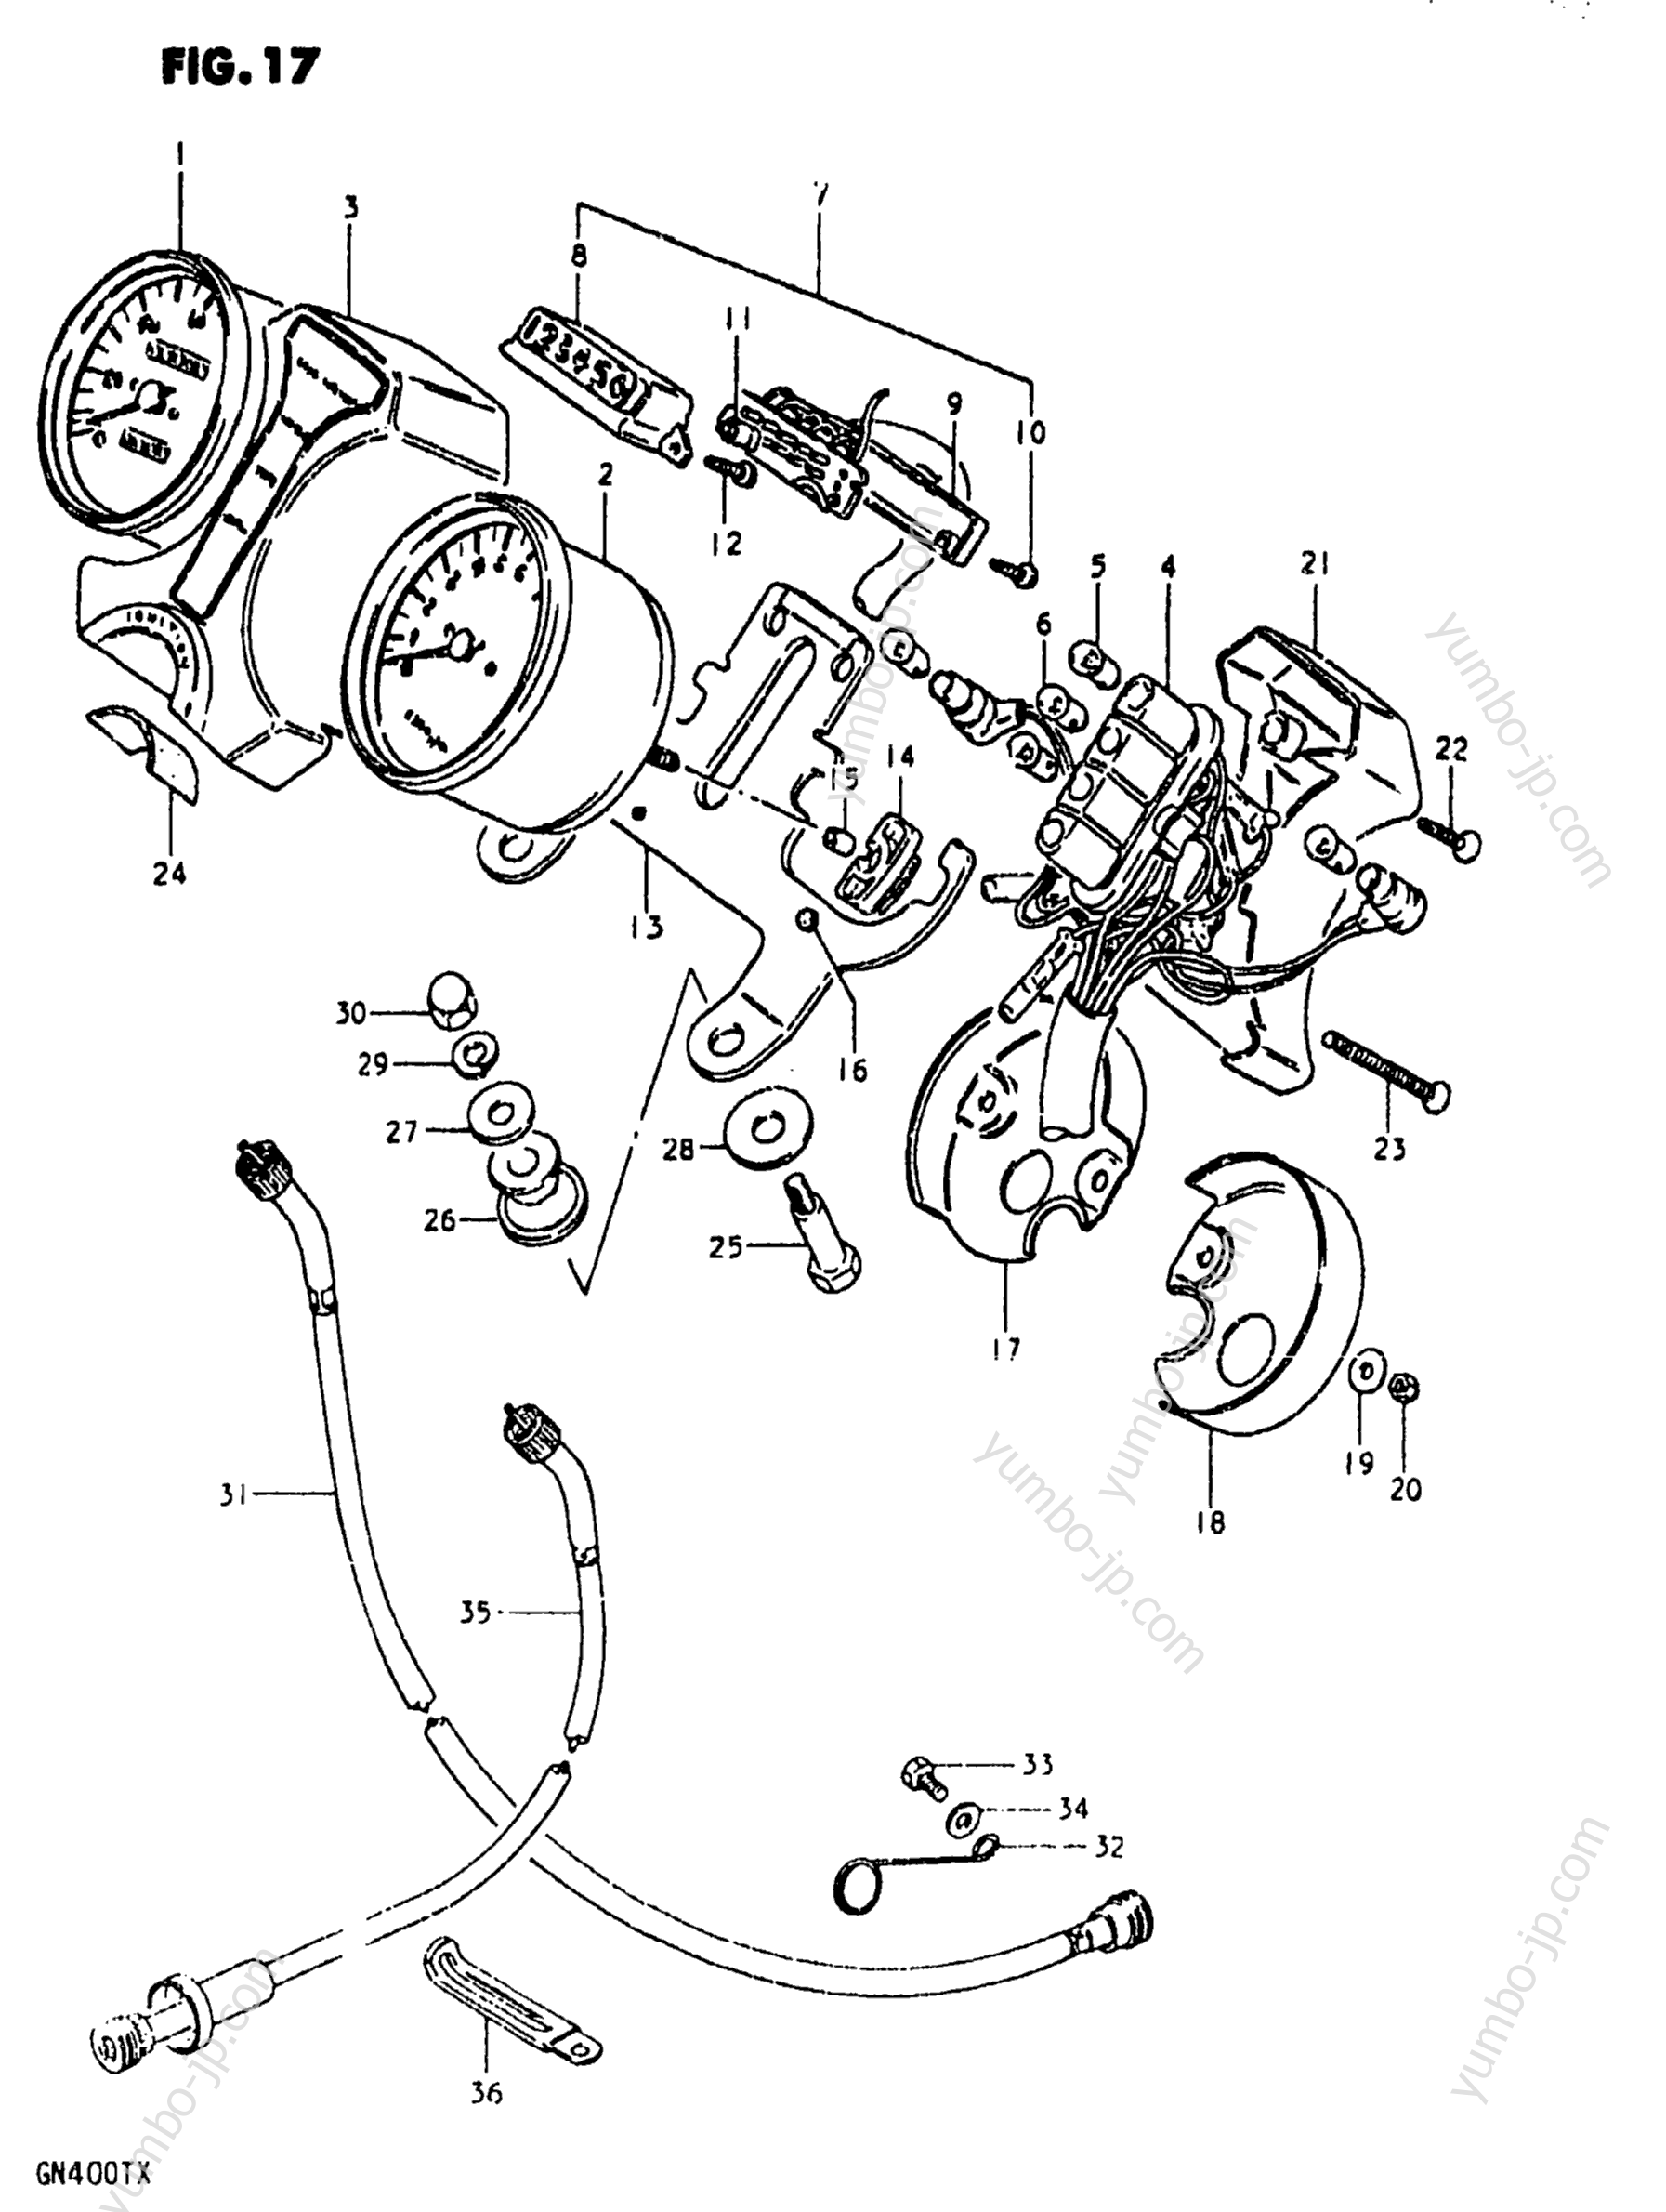 Speedometer - Tachometer for motorcycles SUZUKI GN400XX 1981 year